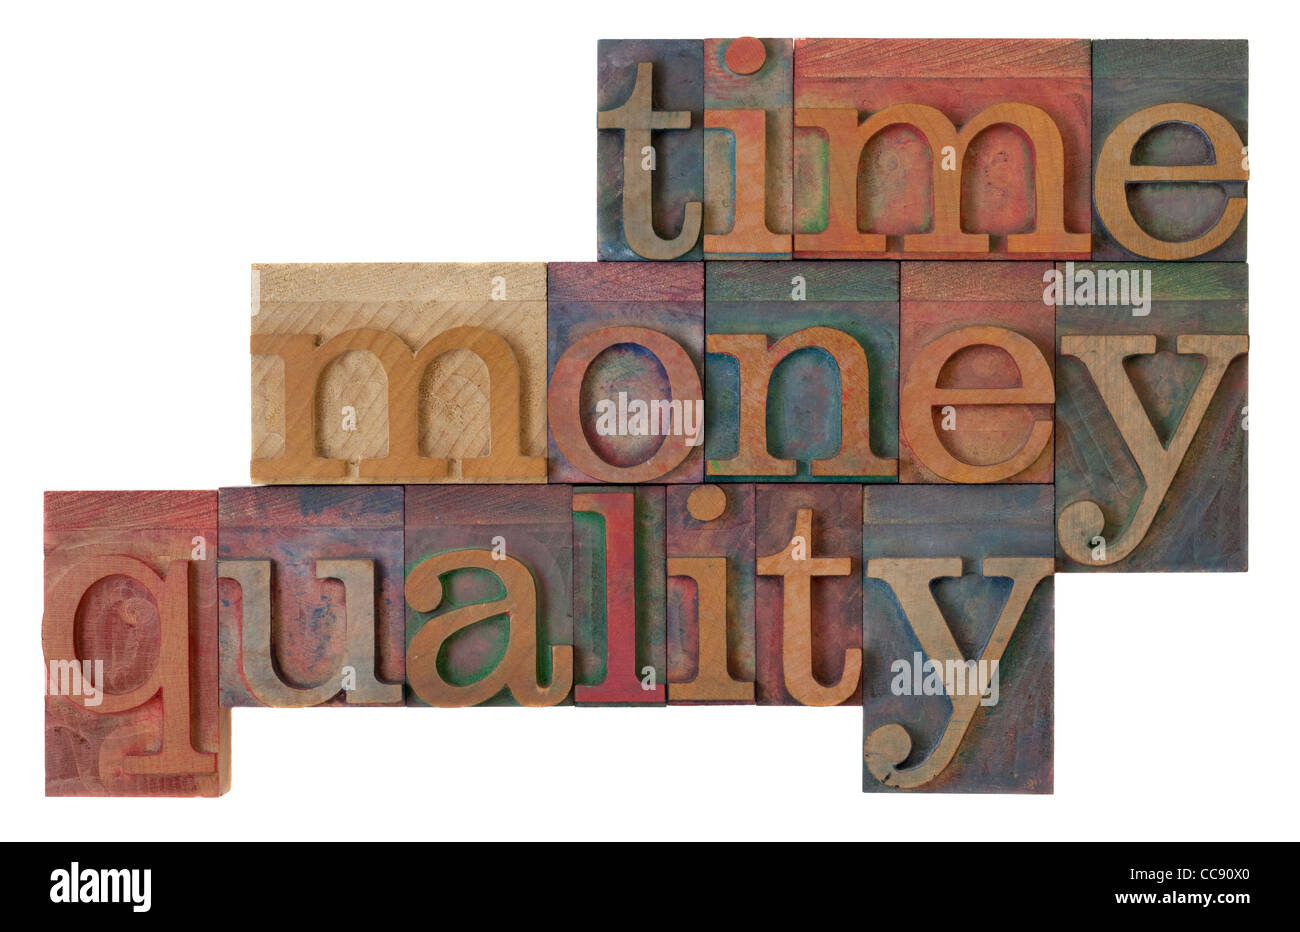 - Estrategia de gestión de tiempo, dinero, calidad palabras en vintage tipografía bloques de madera, manchado de tinta por color Foto de stock